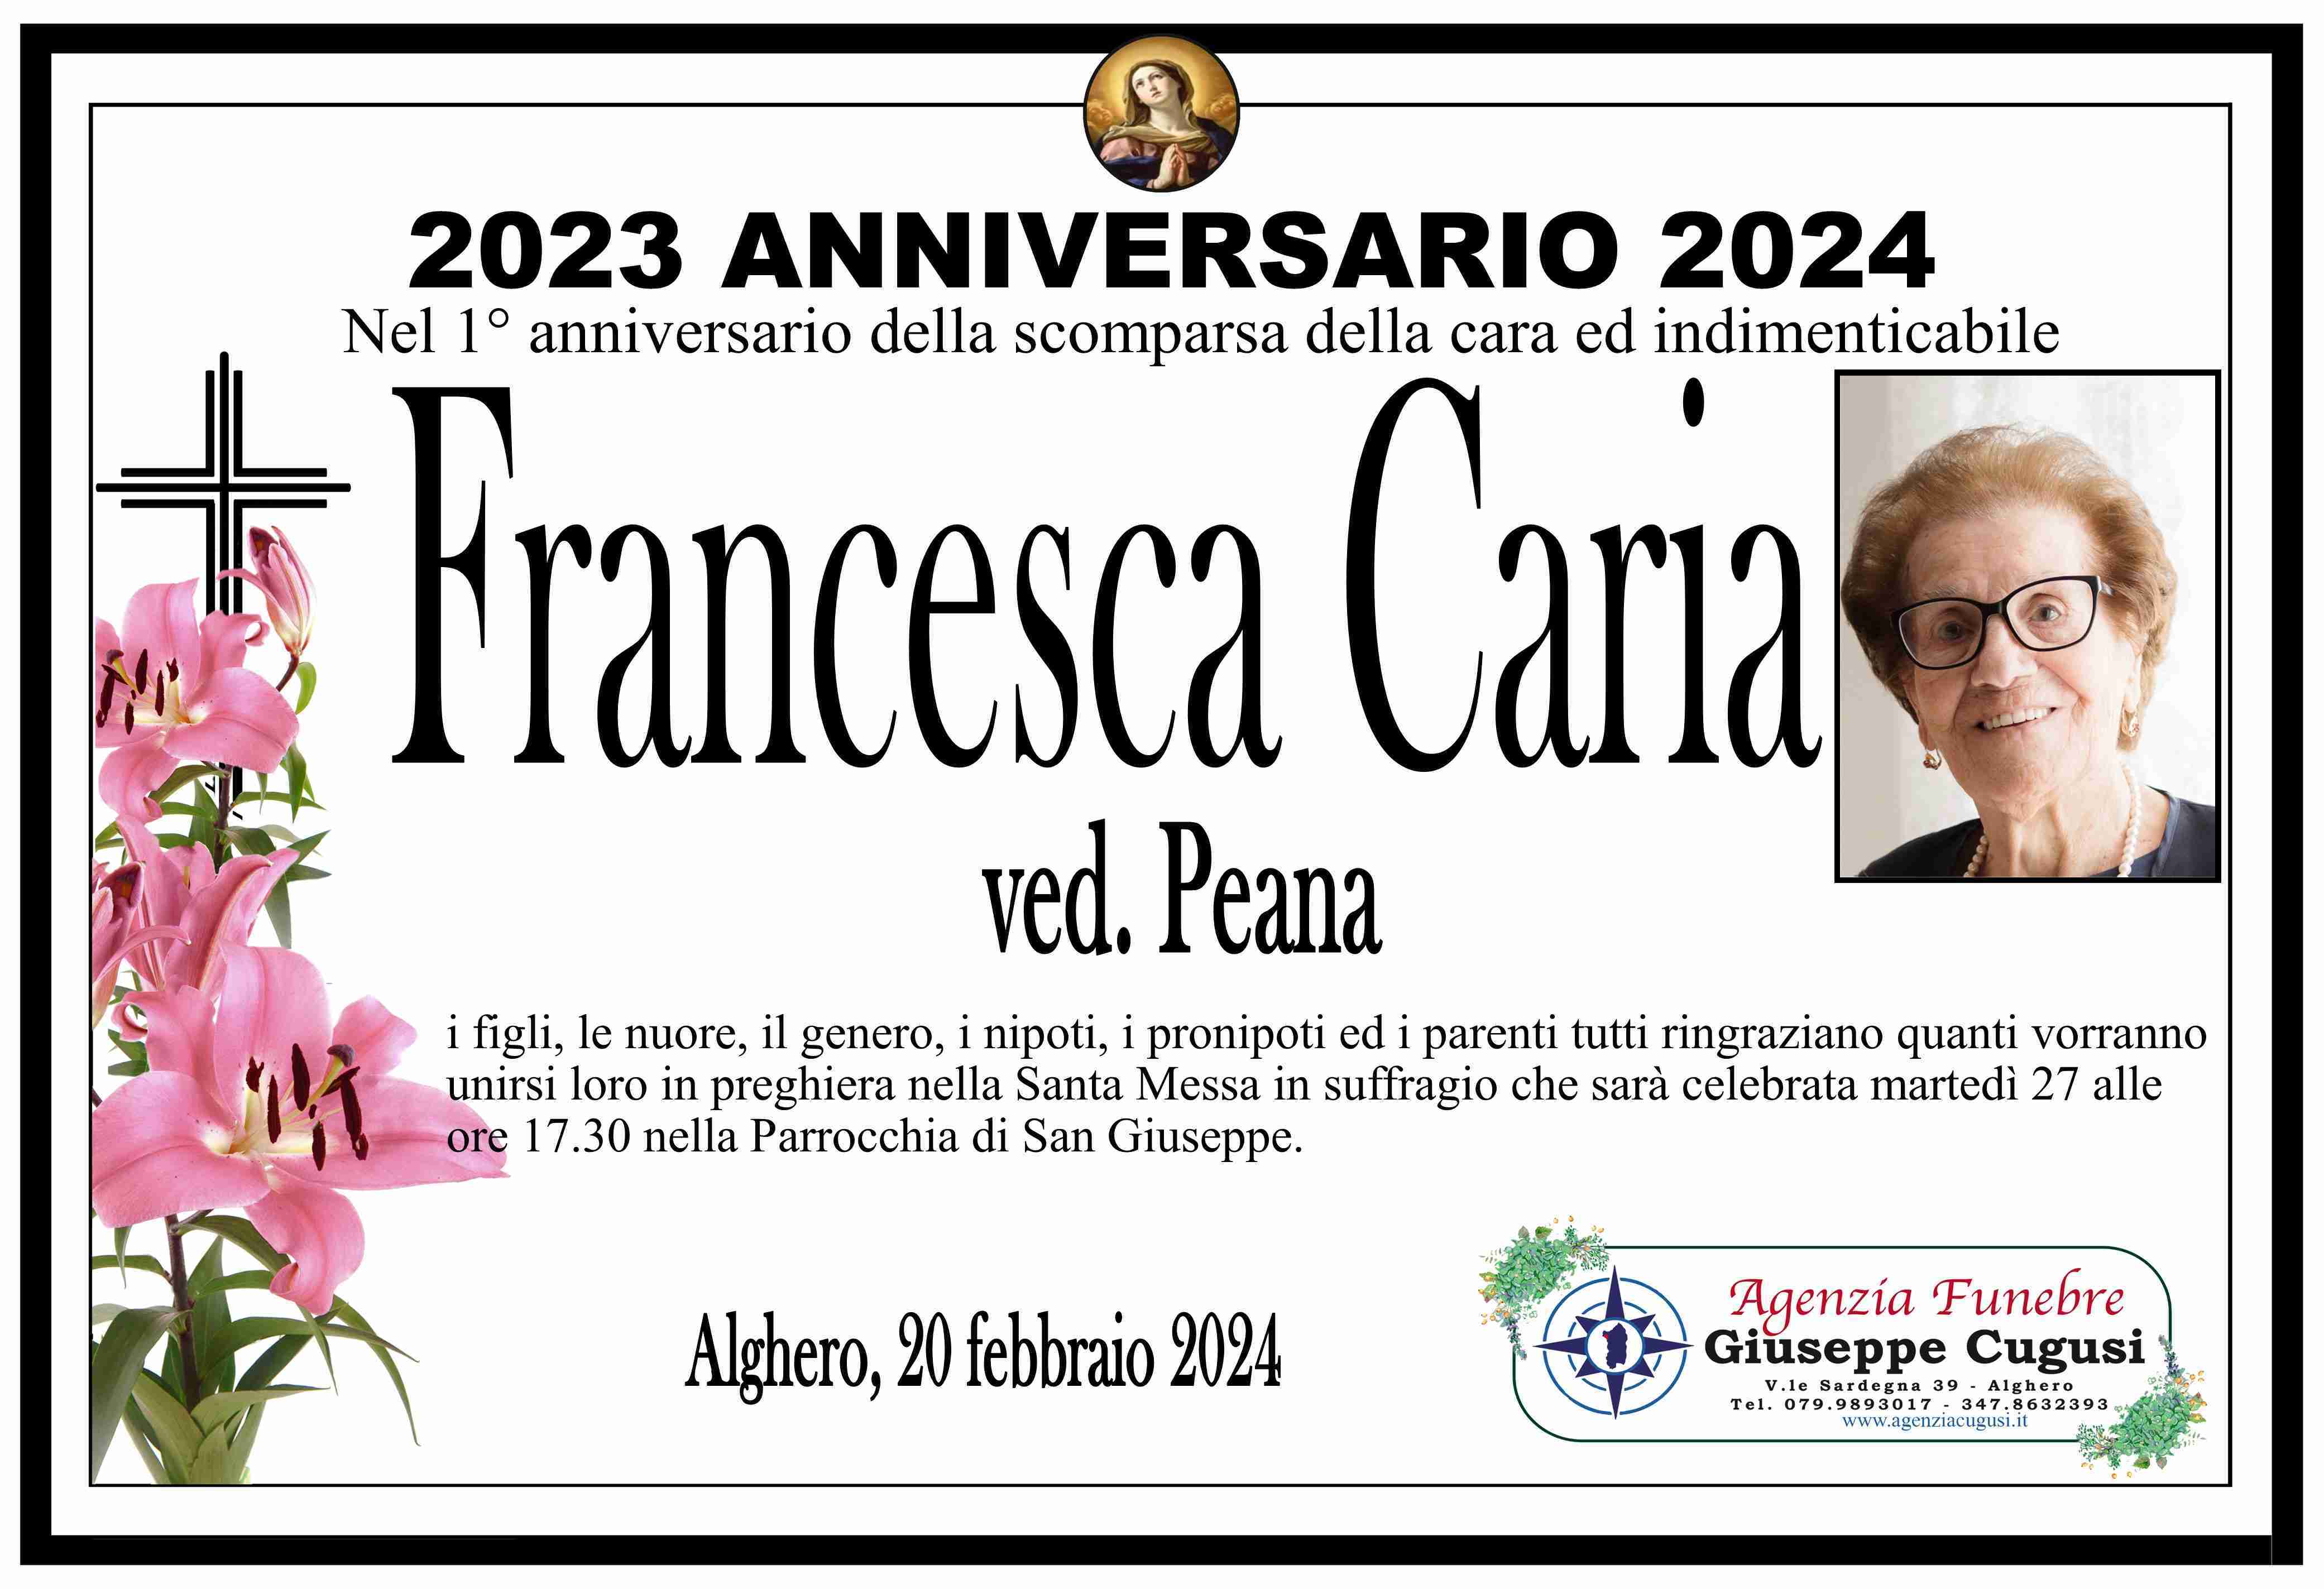 Francesca Caria